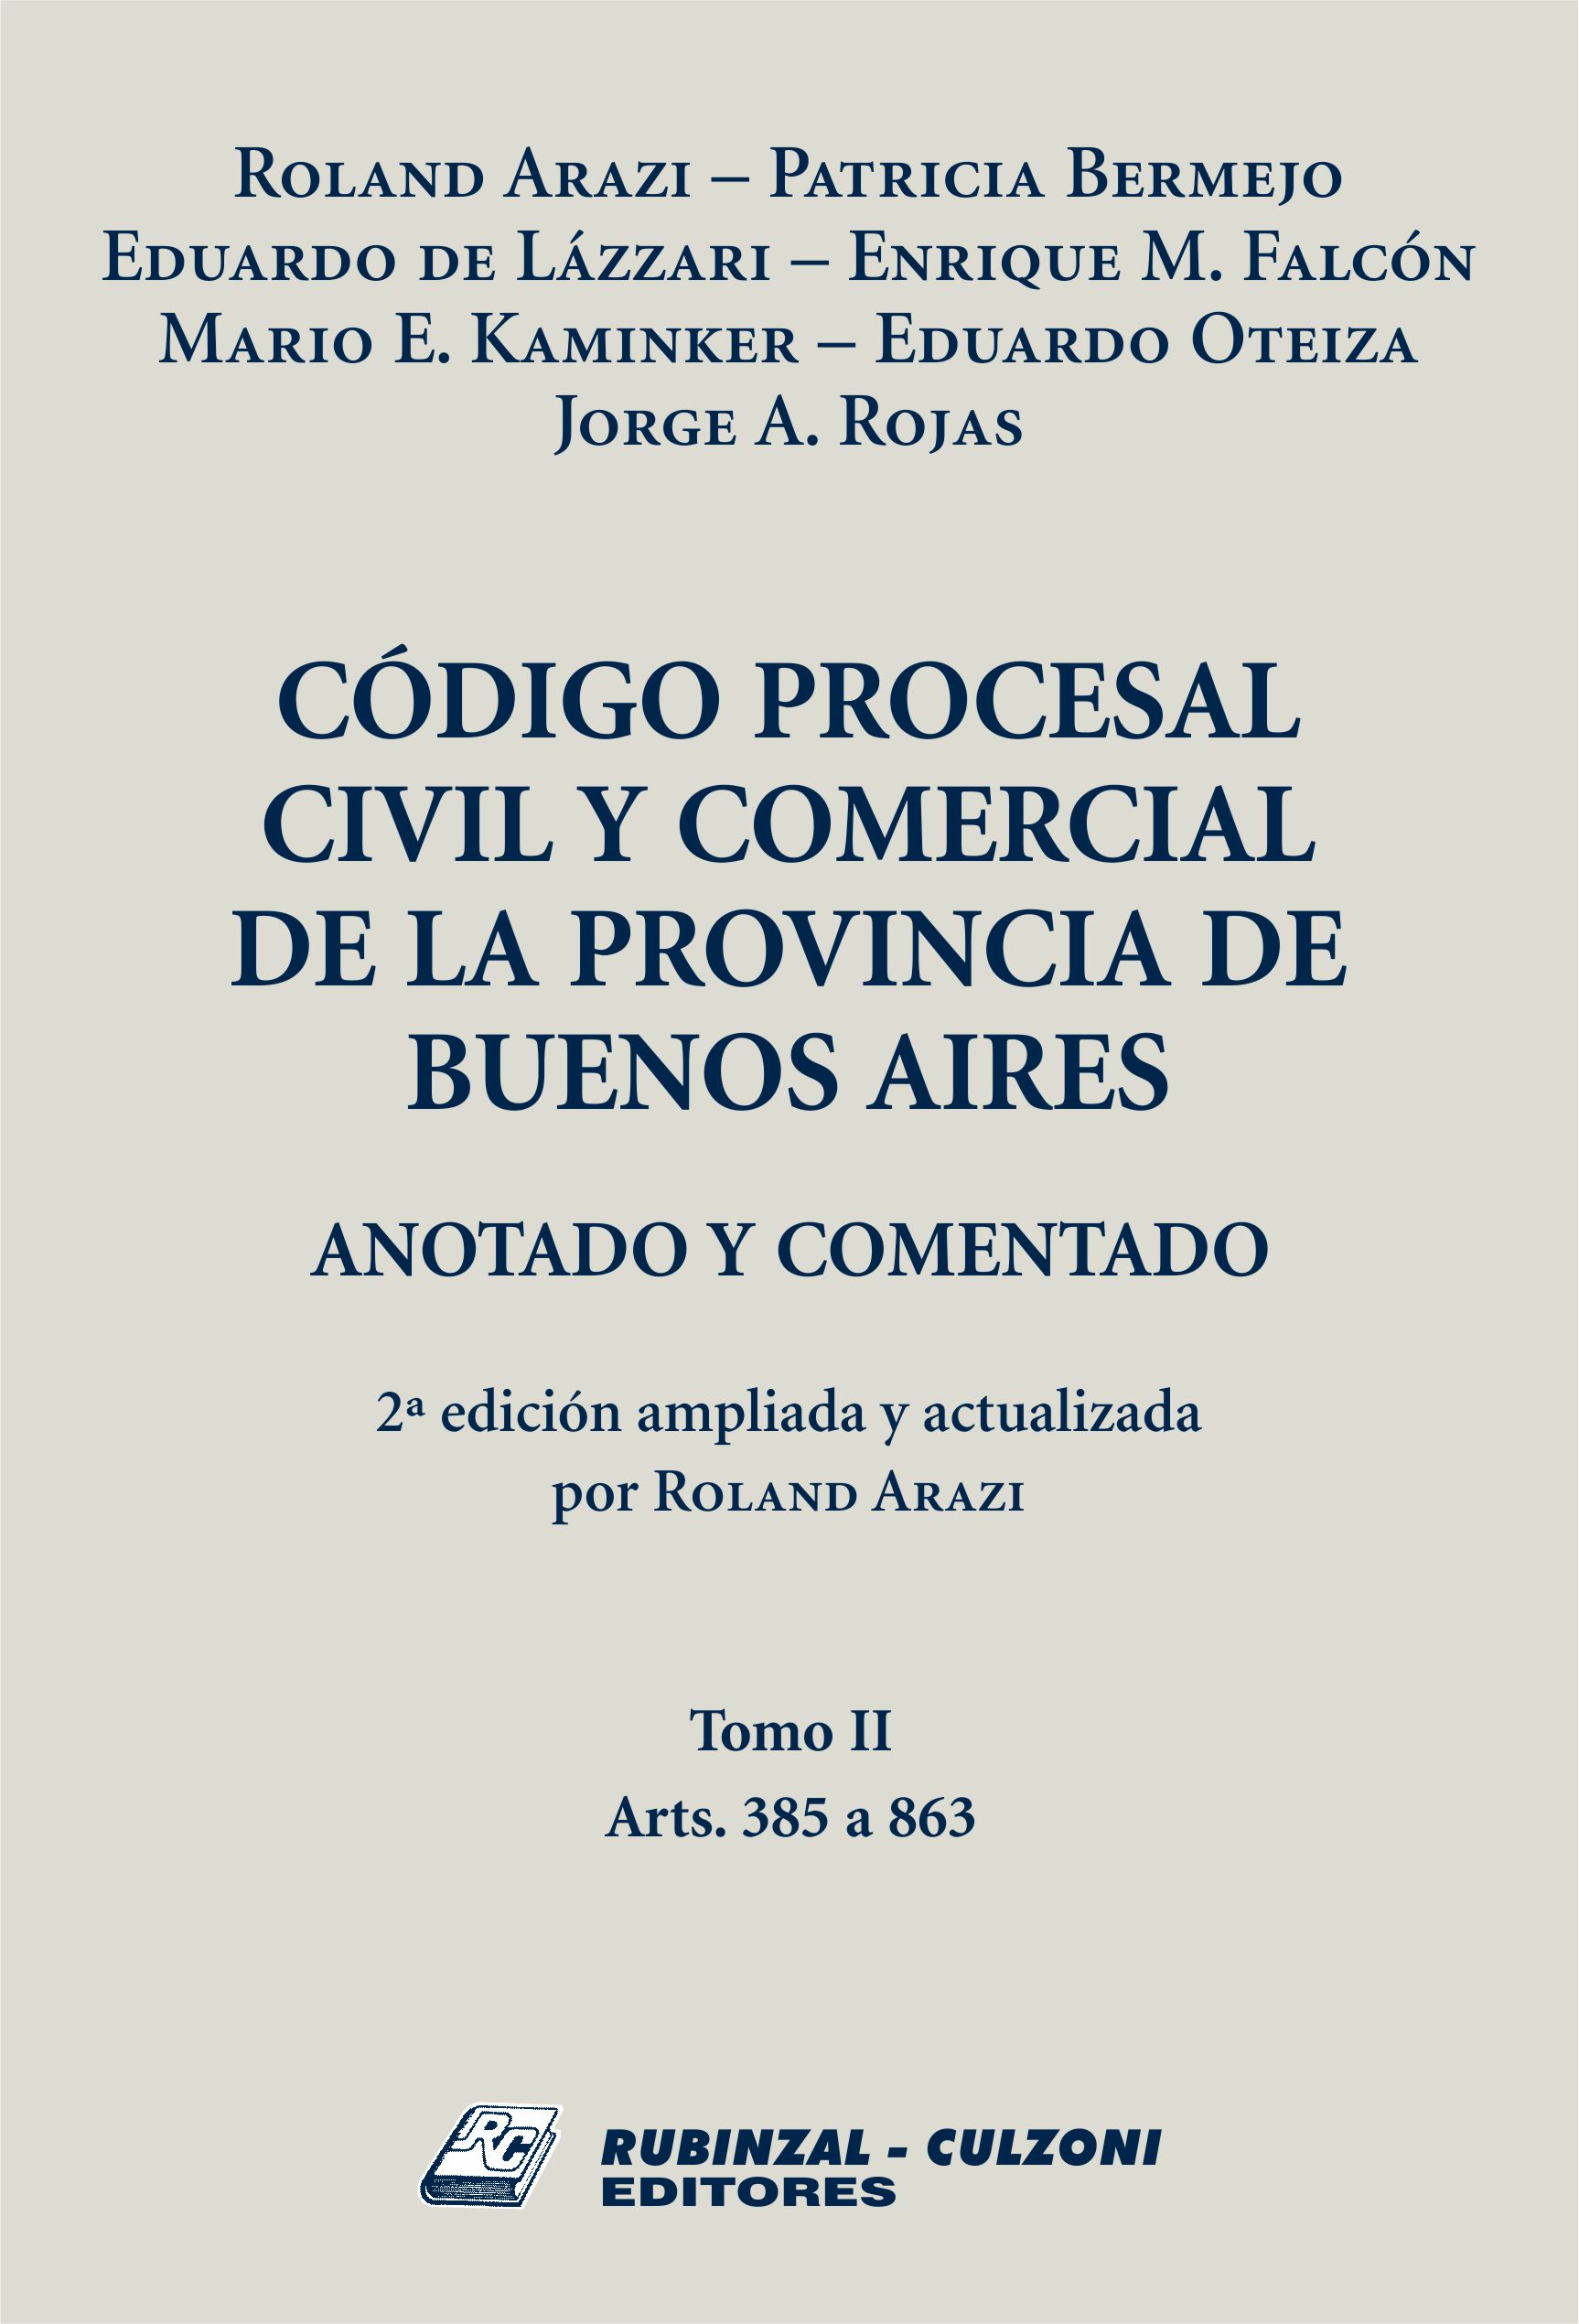 Código Procesal Civil y Comercial de la Provincia de Buenos Aires. Anotado y comentado. - Tomo II. 2ª Edición ampliada y actualizada por Roland Arazi.